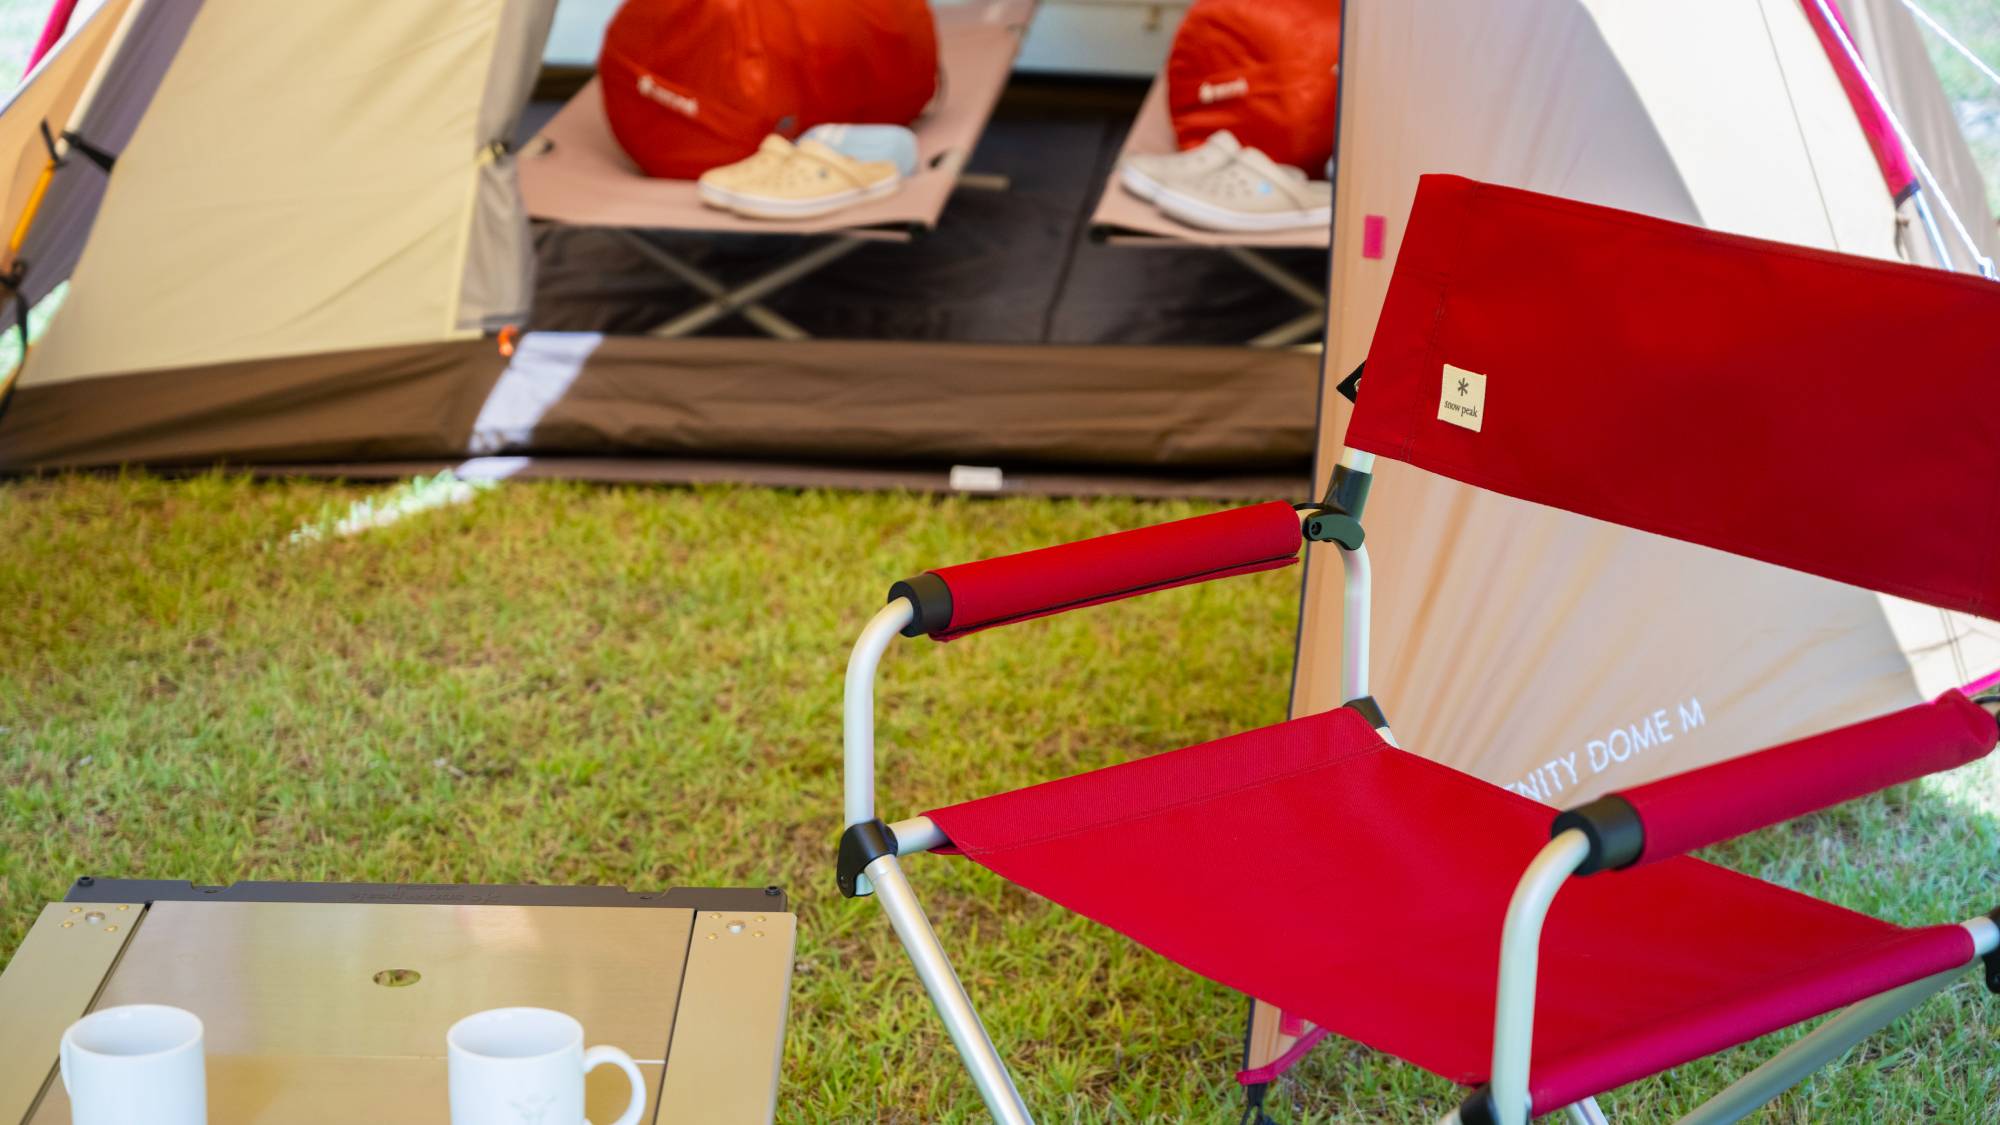 【アウトドア用品】快適なテントや寝袋、洗練されたキャンプツールで 、心地よい滞在をサポートします。 